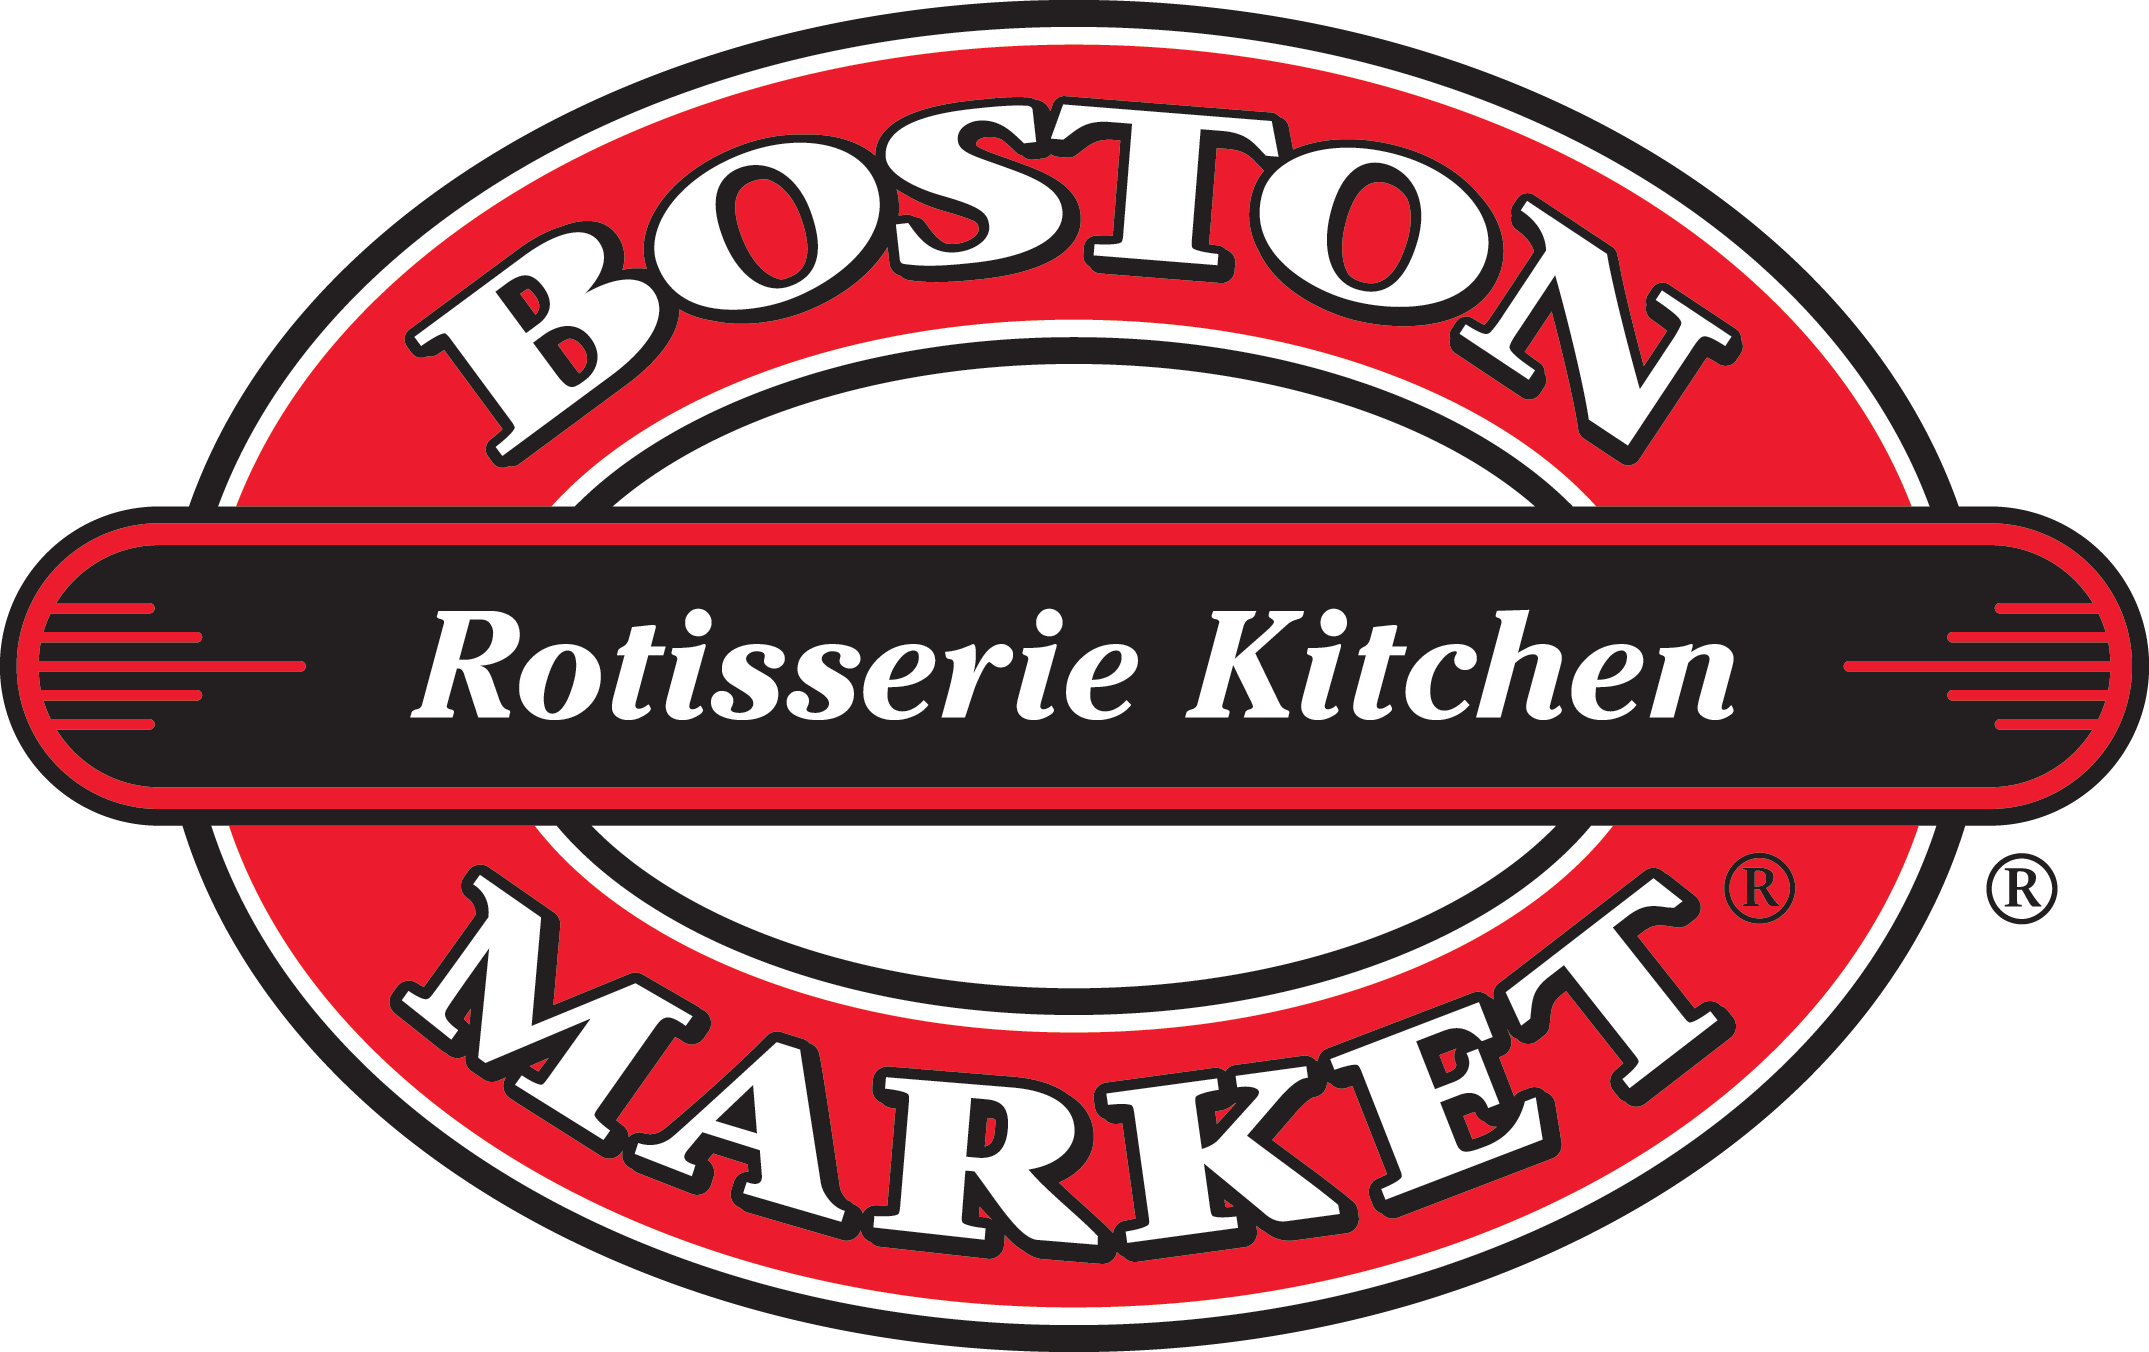 Boston Market 1/4 Chicken Dinner $5.00 10/11-10/12